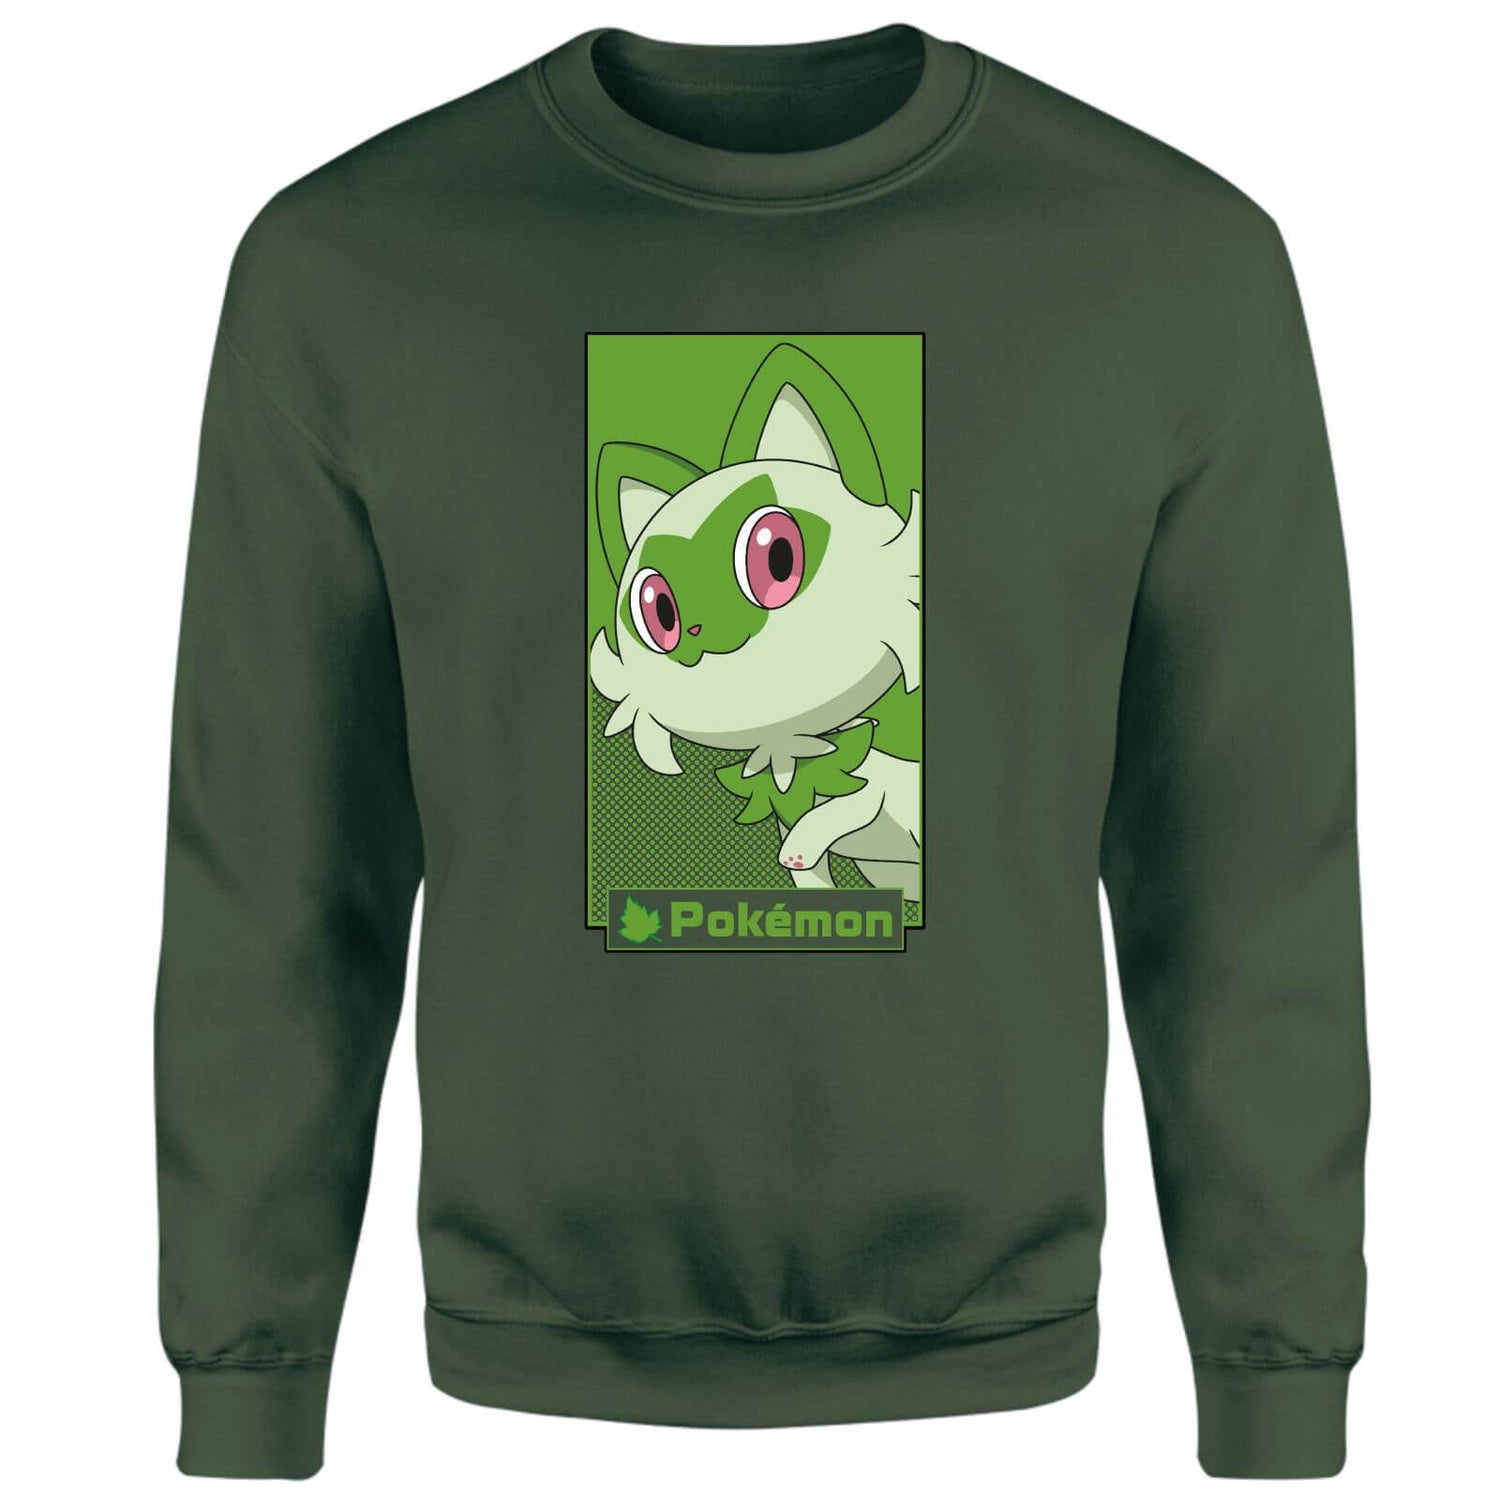 Pokémon Sprigatito Sweatshirt - Green